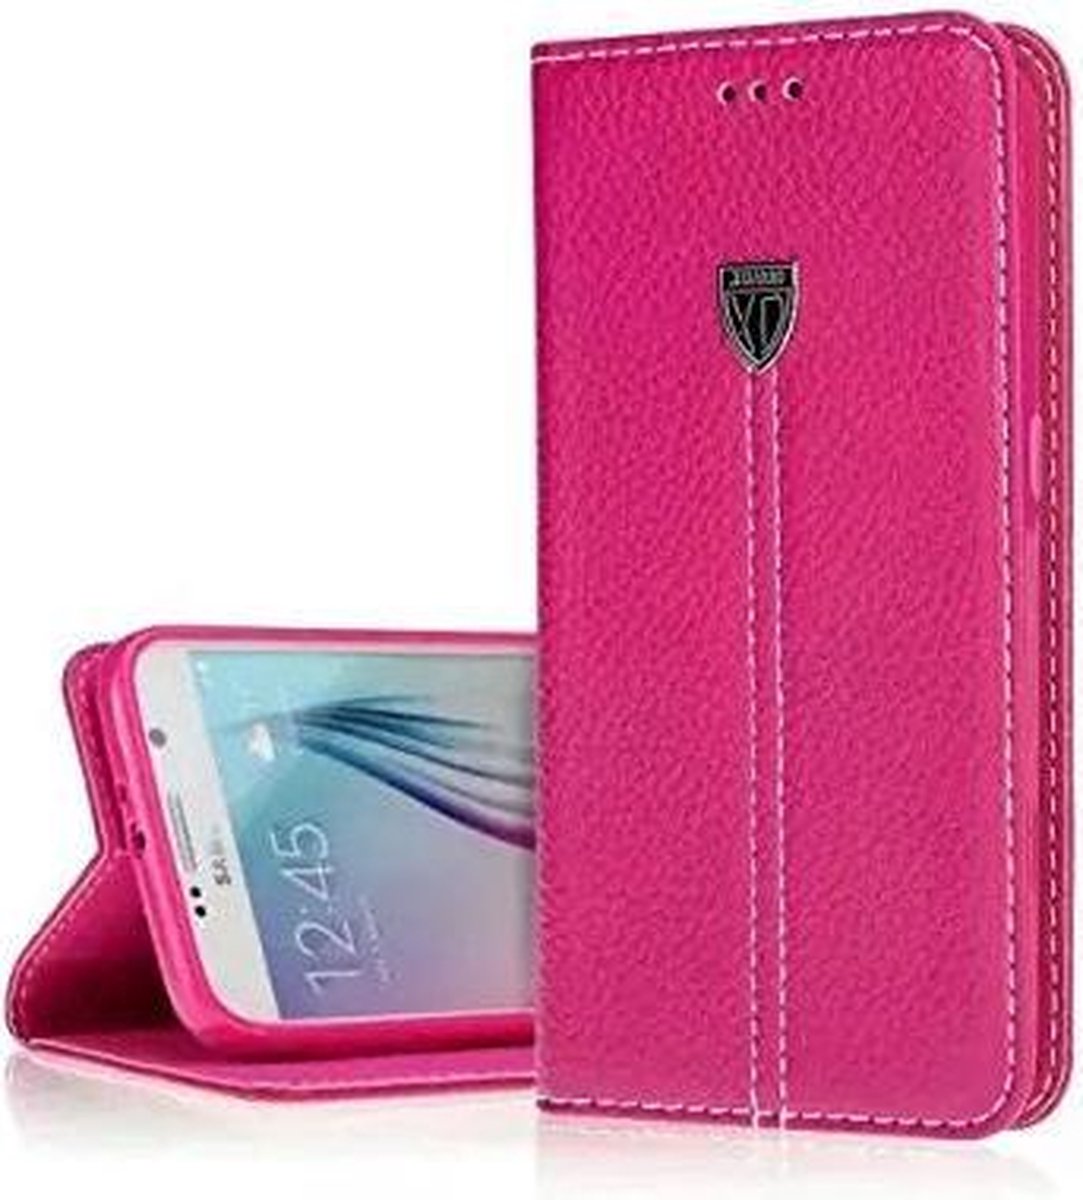 Xundd Fundas Echt Leer Case Cover Hoesje Voor iPhone 6 Plus Pink / Roze